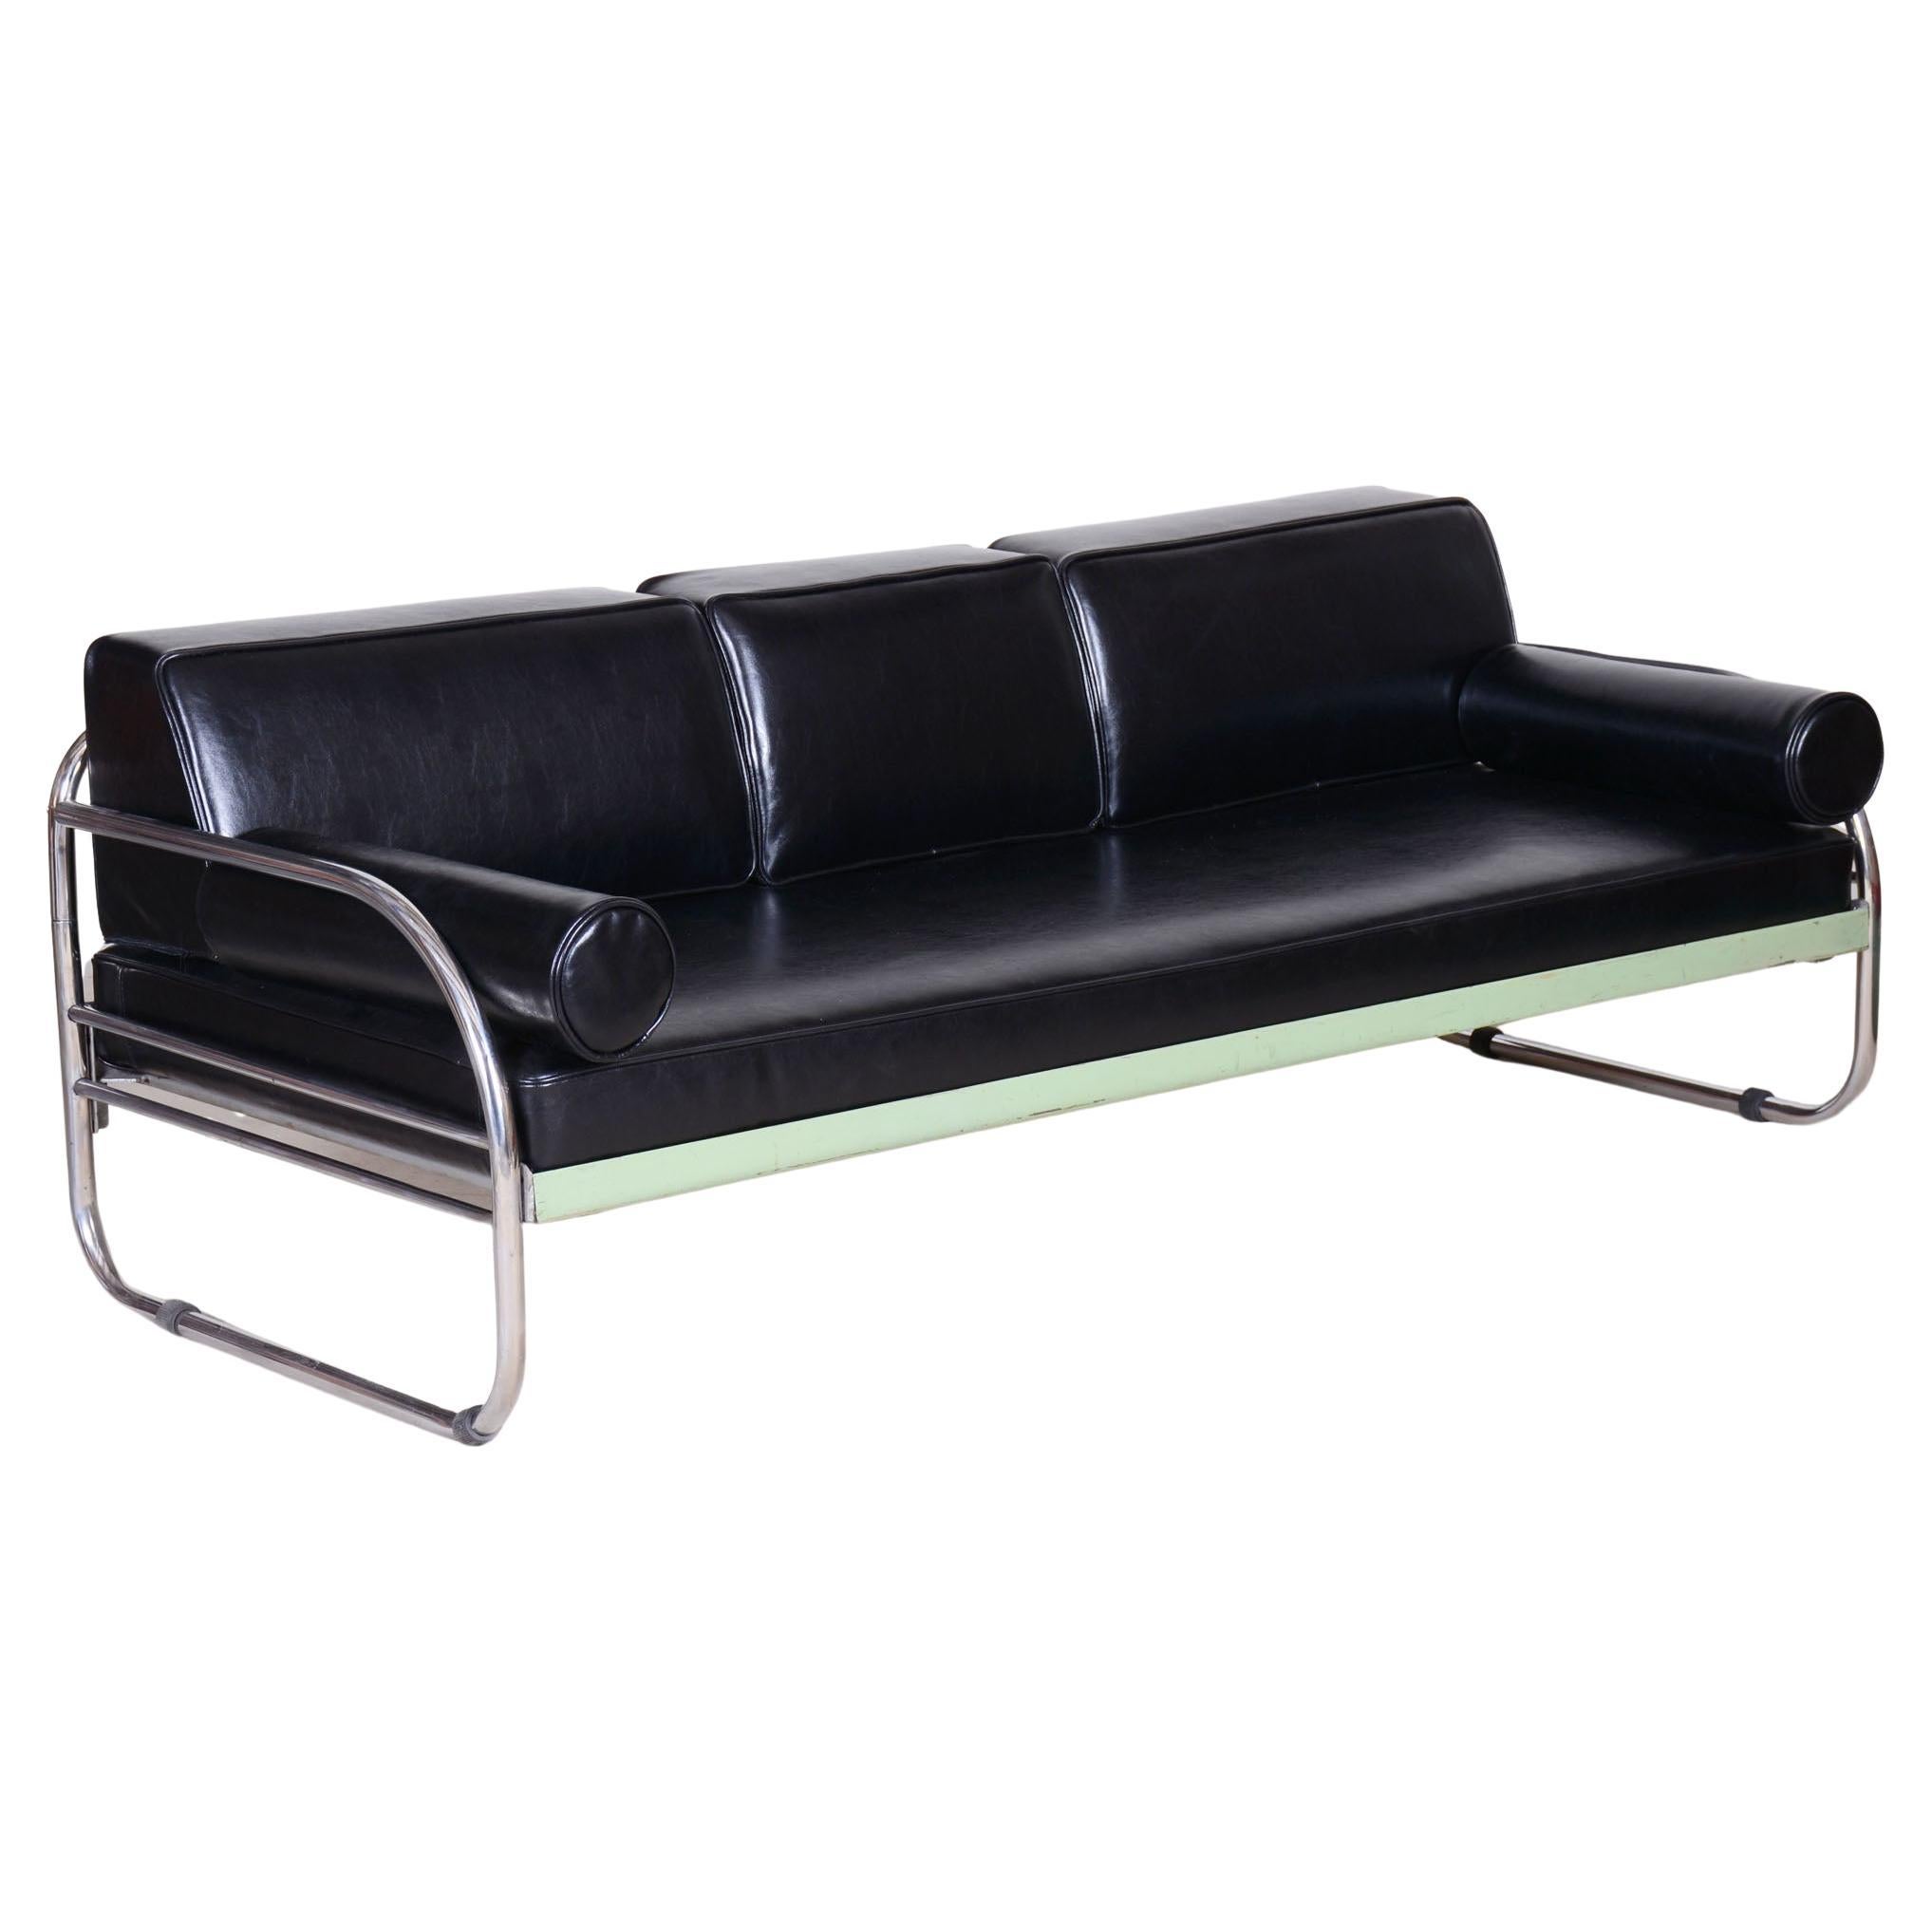 Restauriertes schwarzes Bauhaus-Sofa, Robert Slezak, hochwertiges Leder, Chrom, 1930er Jahre